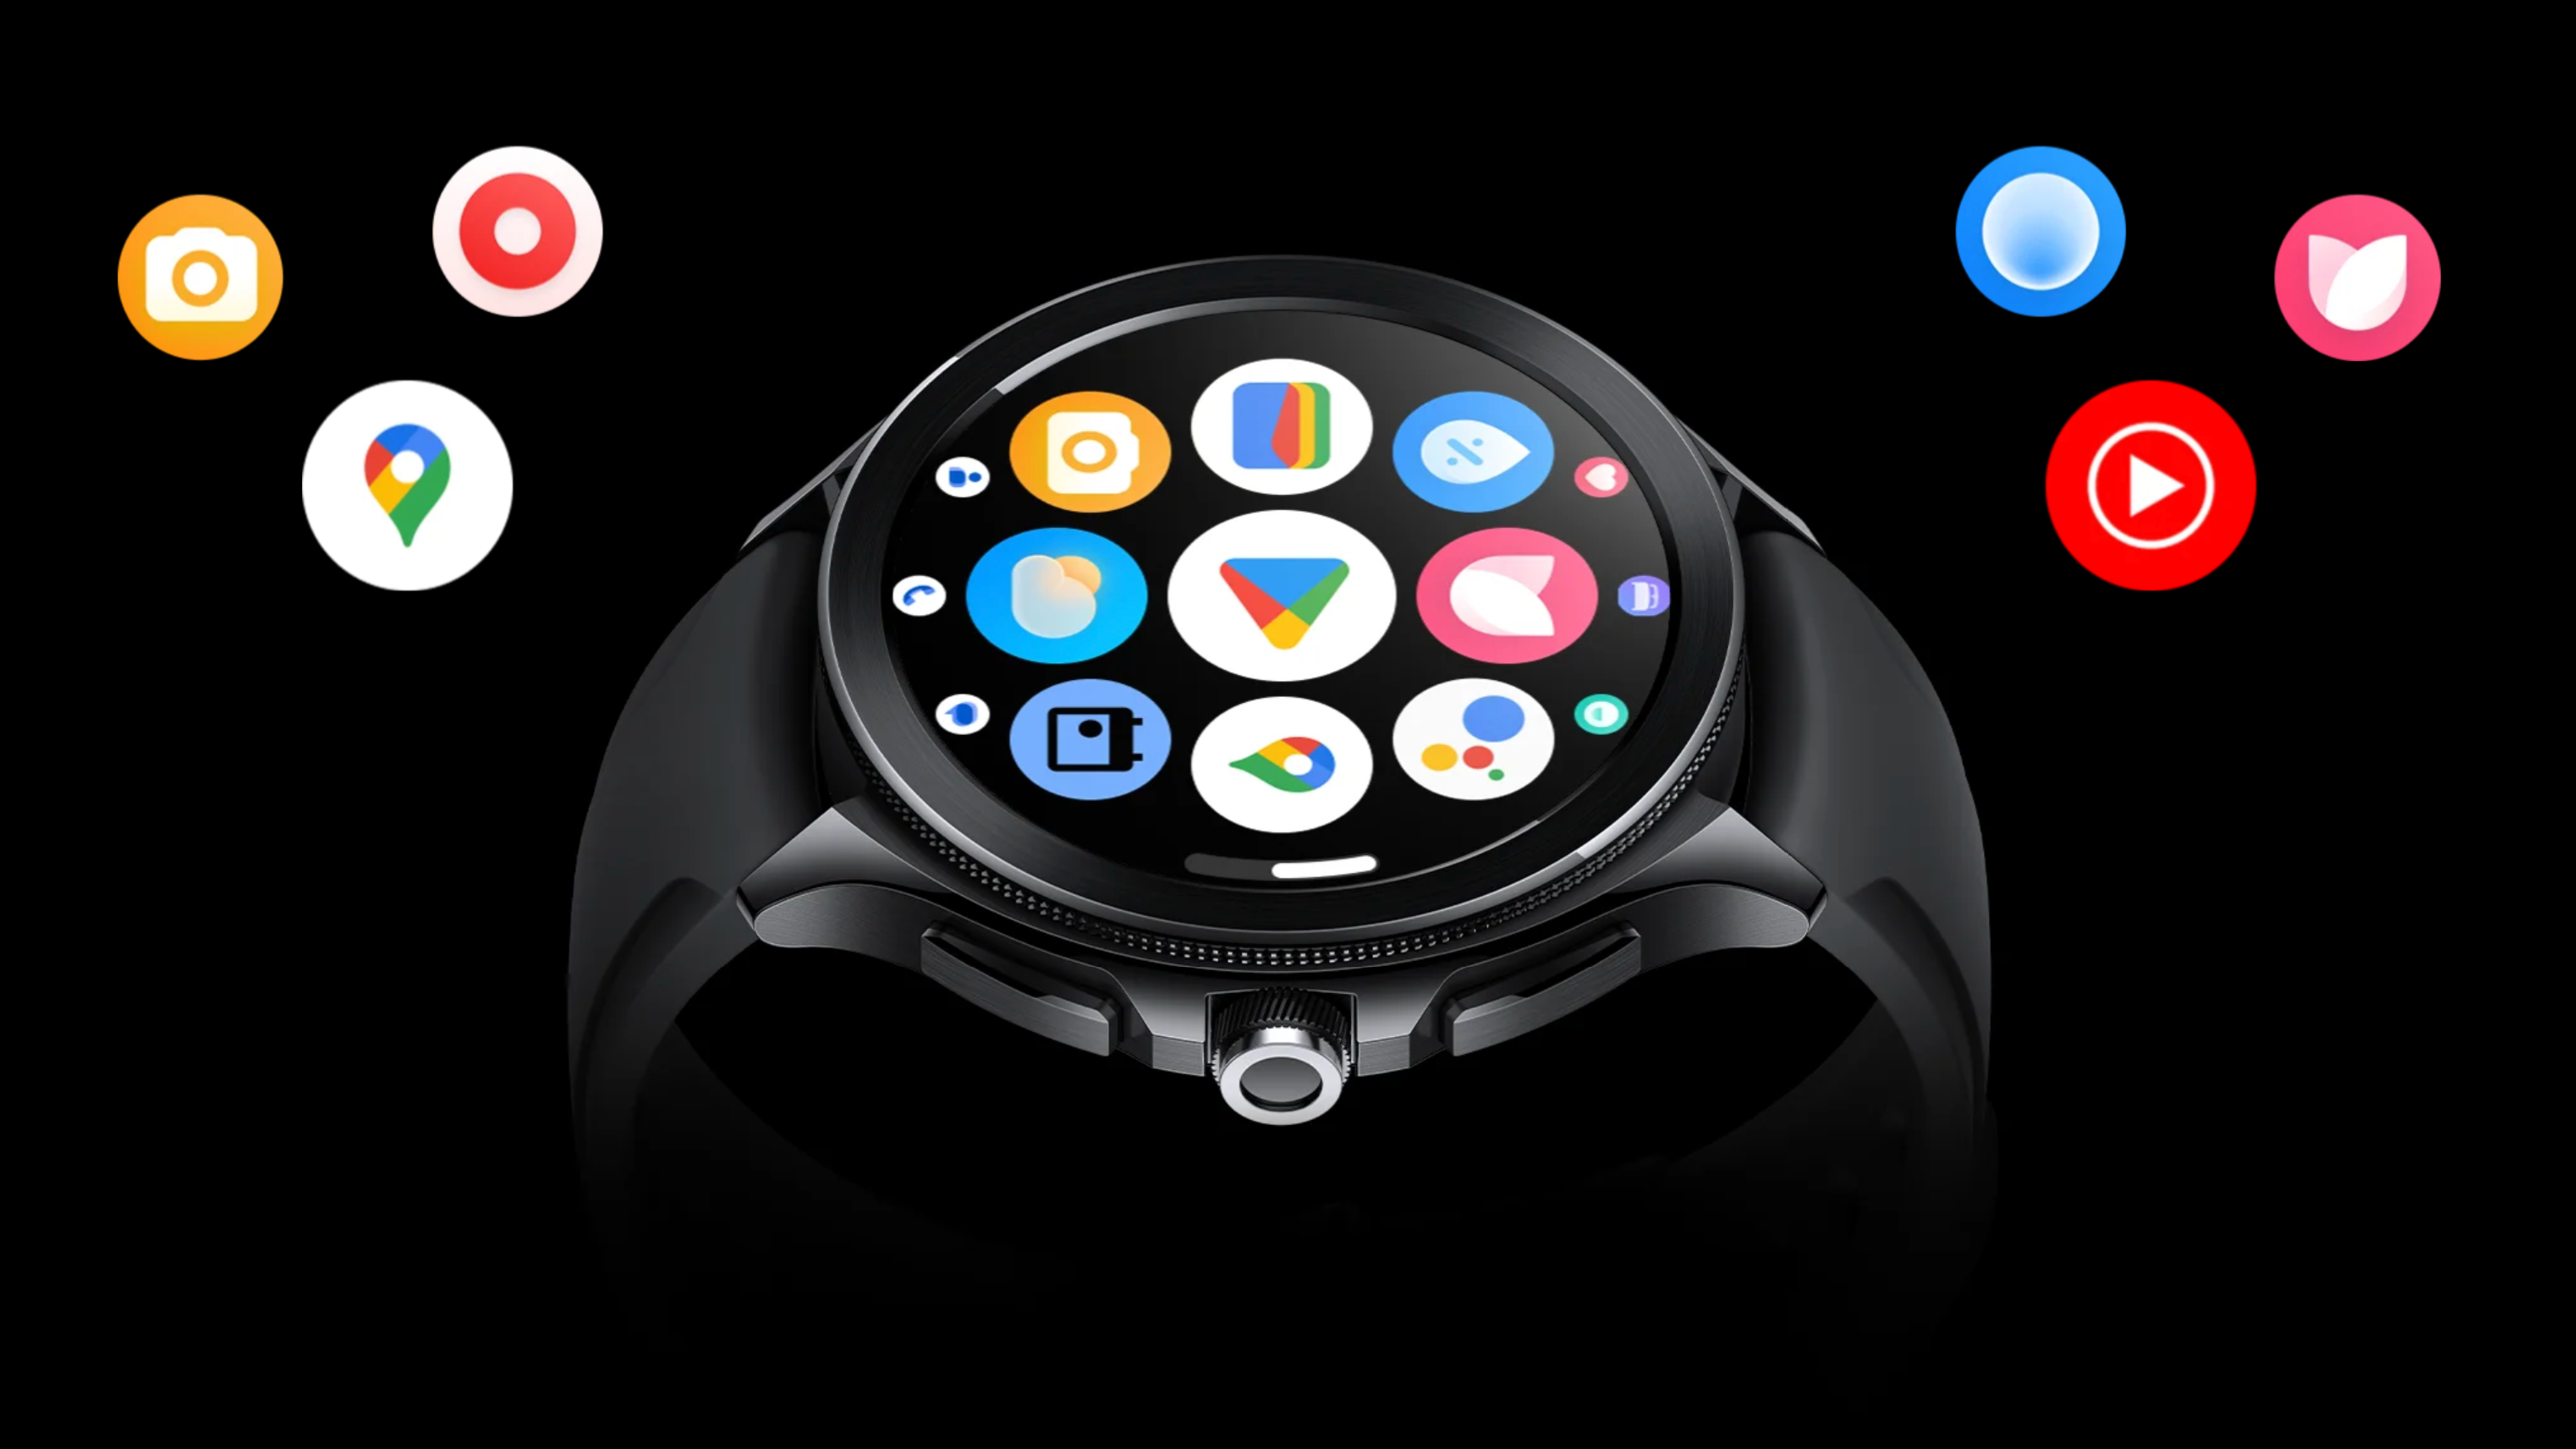 Oportunidade: Smartwatch Apple Watch SE com cupom de R$ 200 de